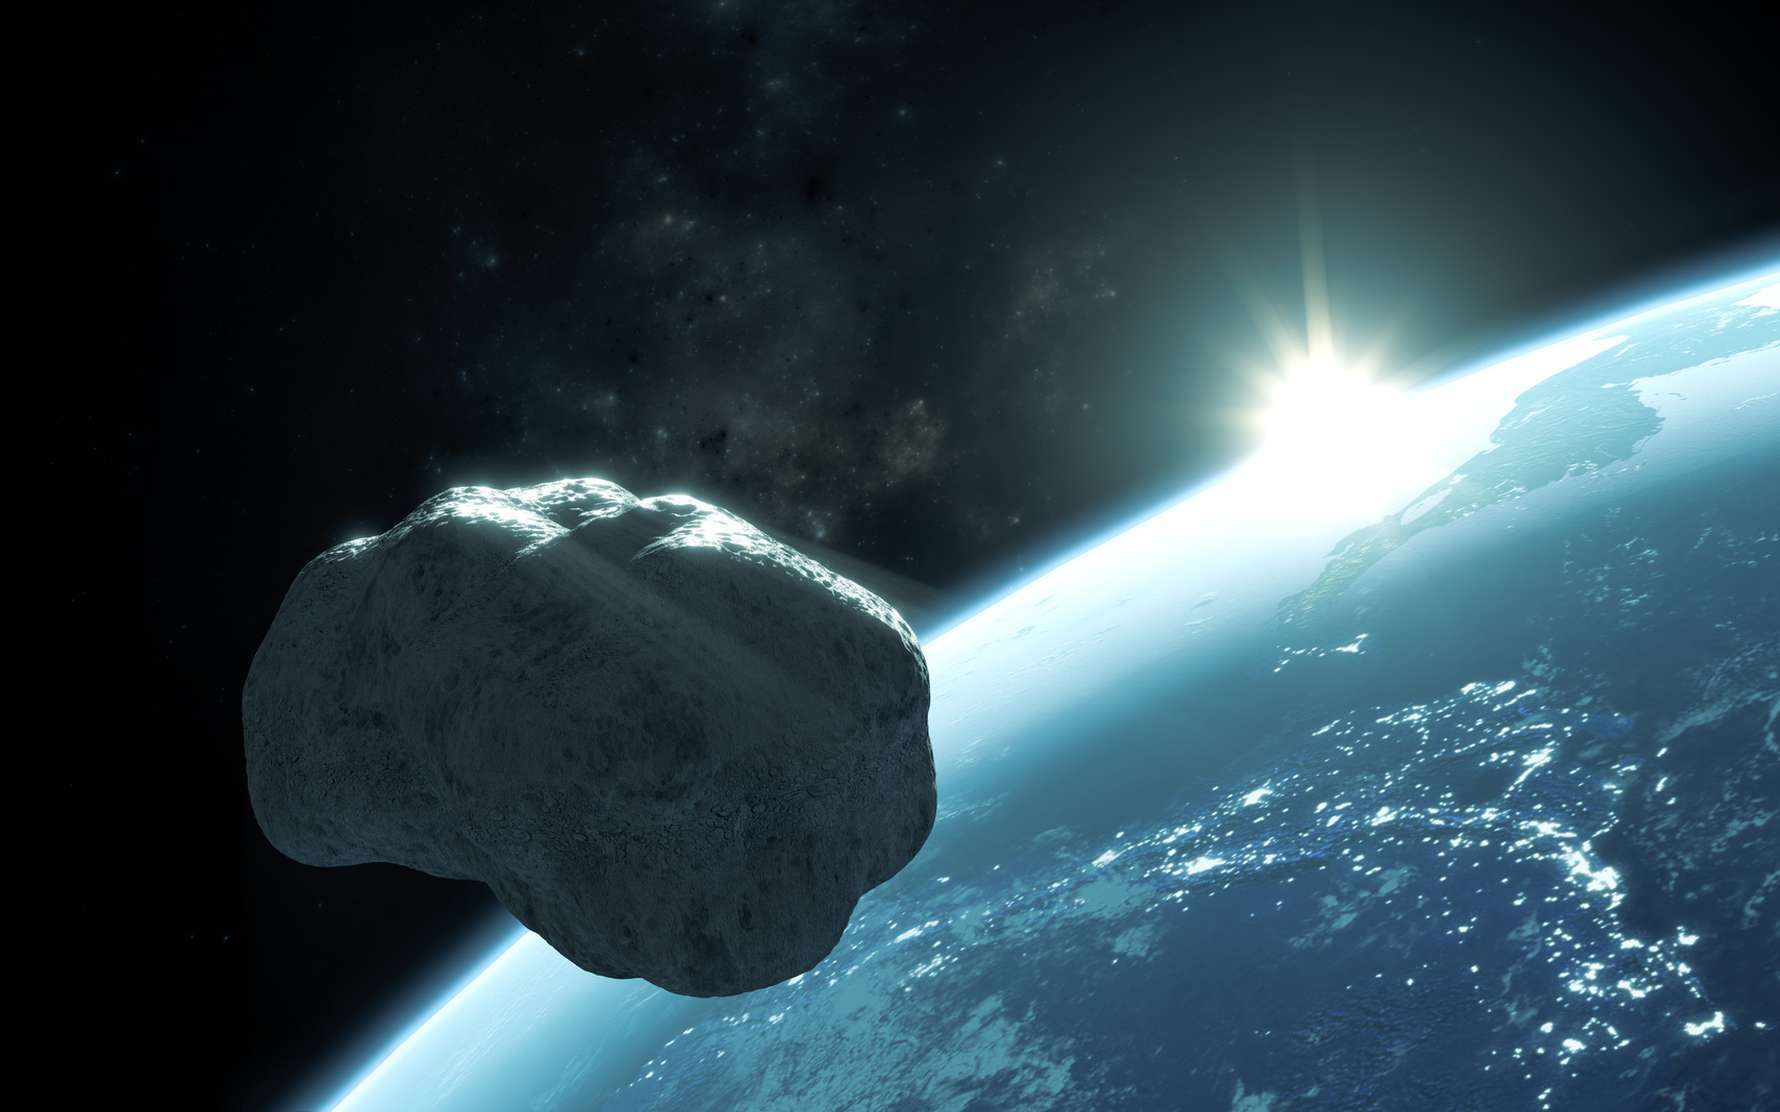 Astéroïde Apophis : son passage en 2029 n'inquiète plus la Nasa depuis longtemps